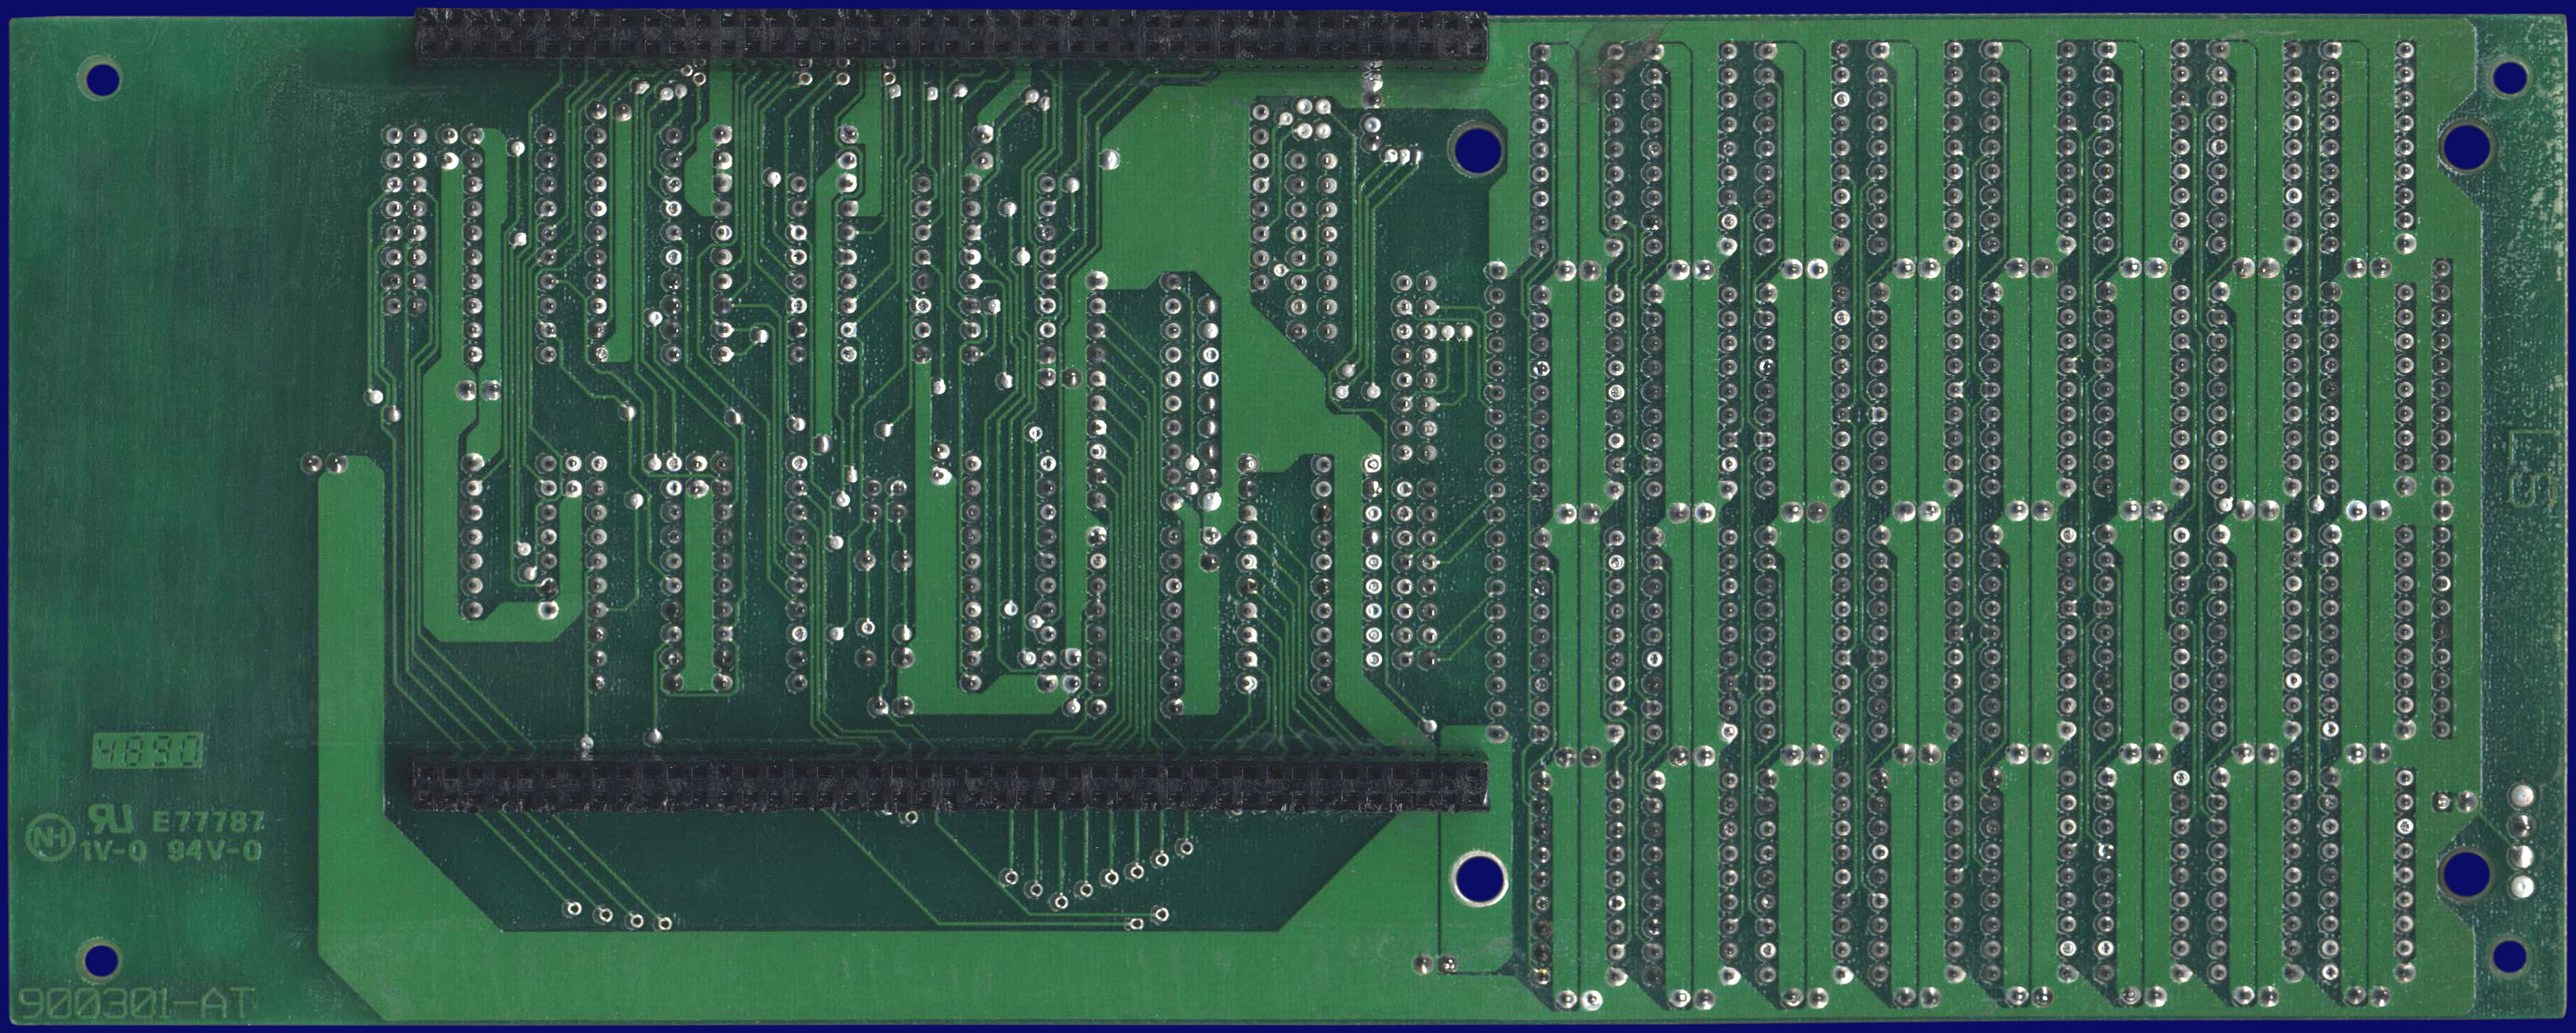 Kupke Golem SCSI II (A500) - Memory daughterboard, back side